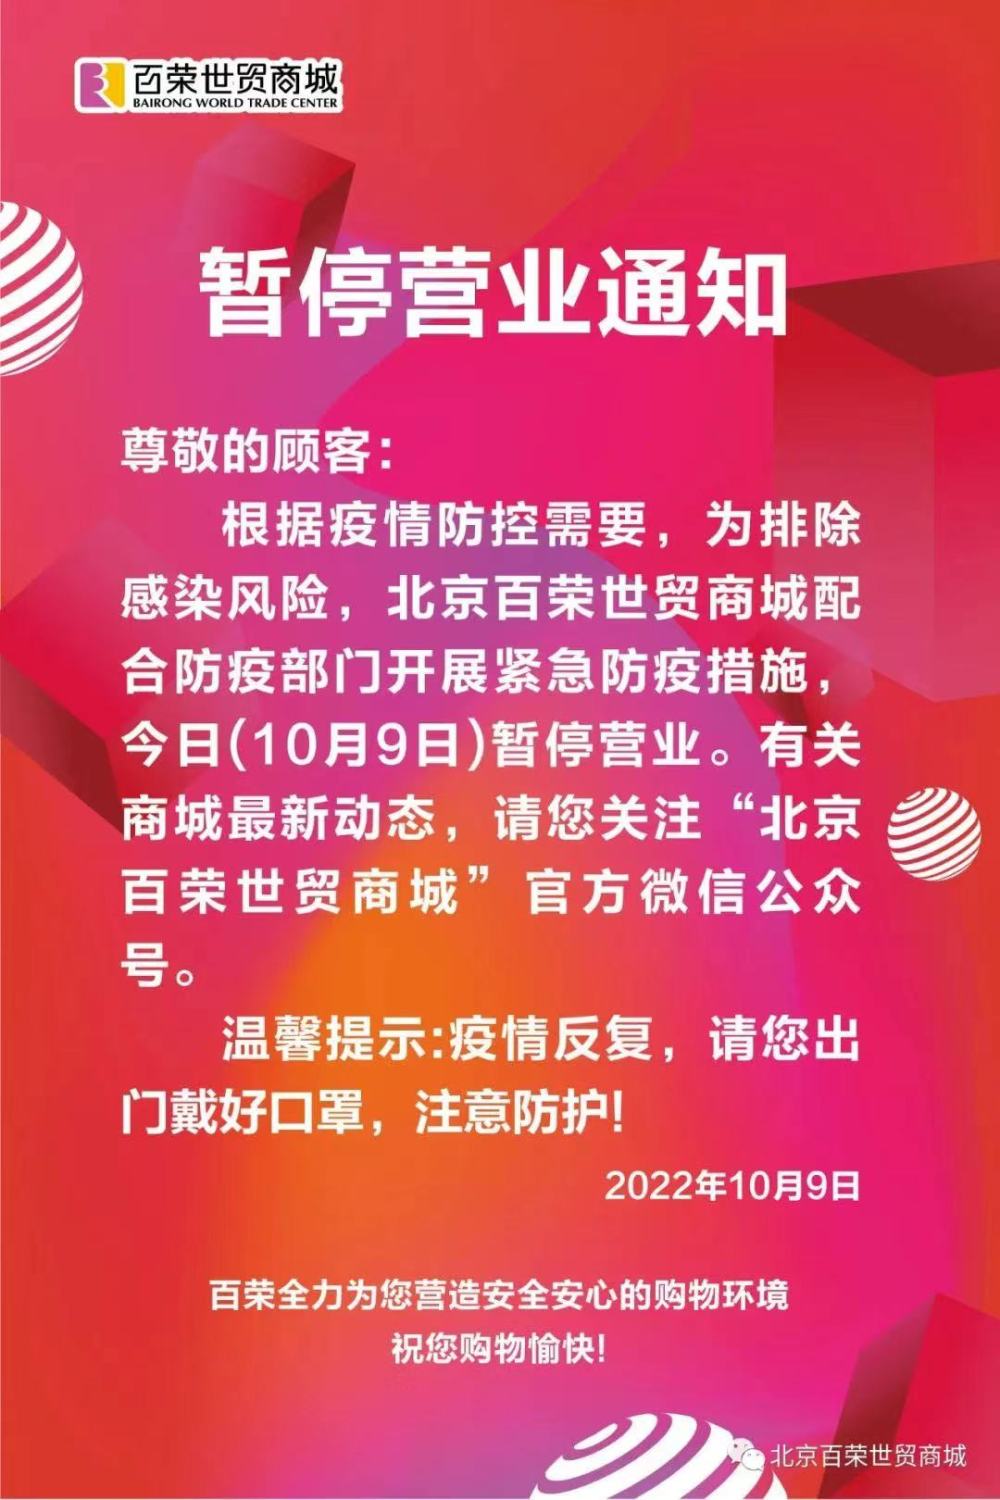 因疫情防控需要，北京百荣世贸商城今日暂停营业20个新闻标题